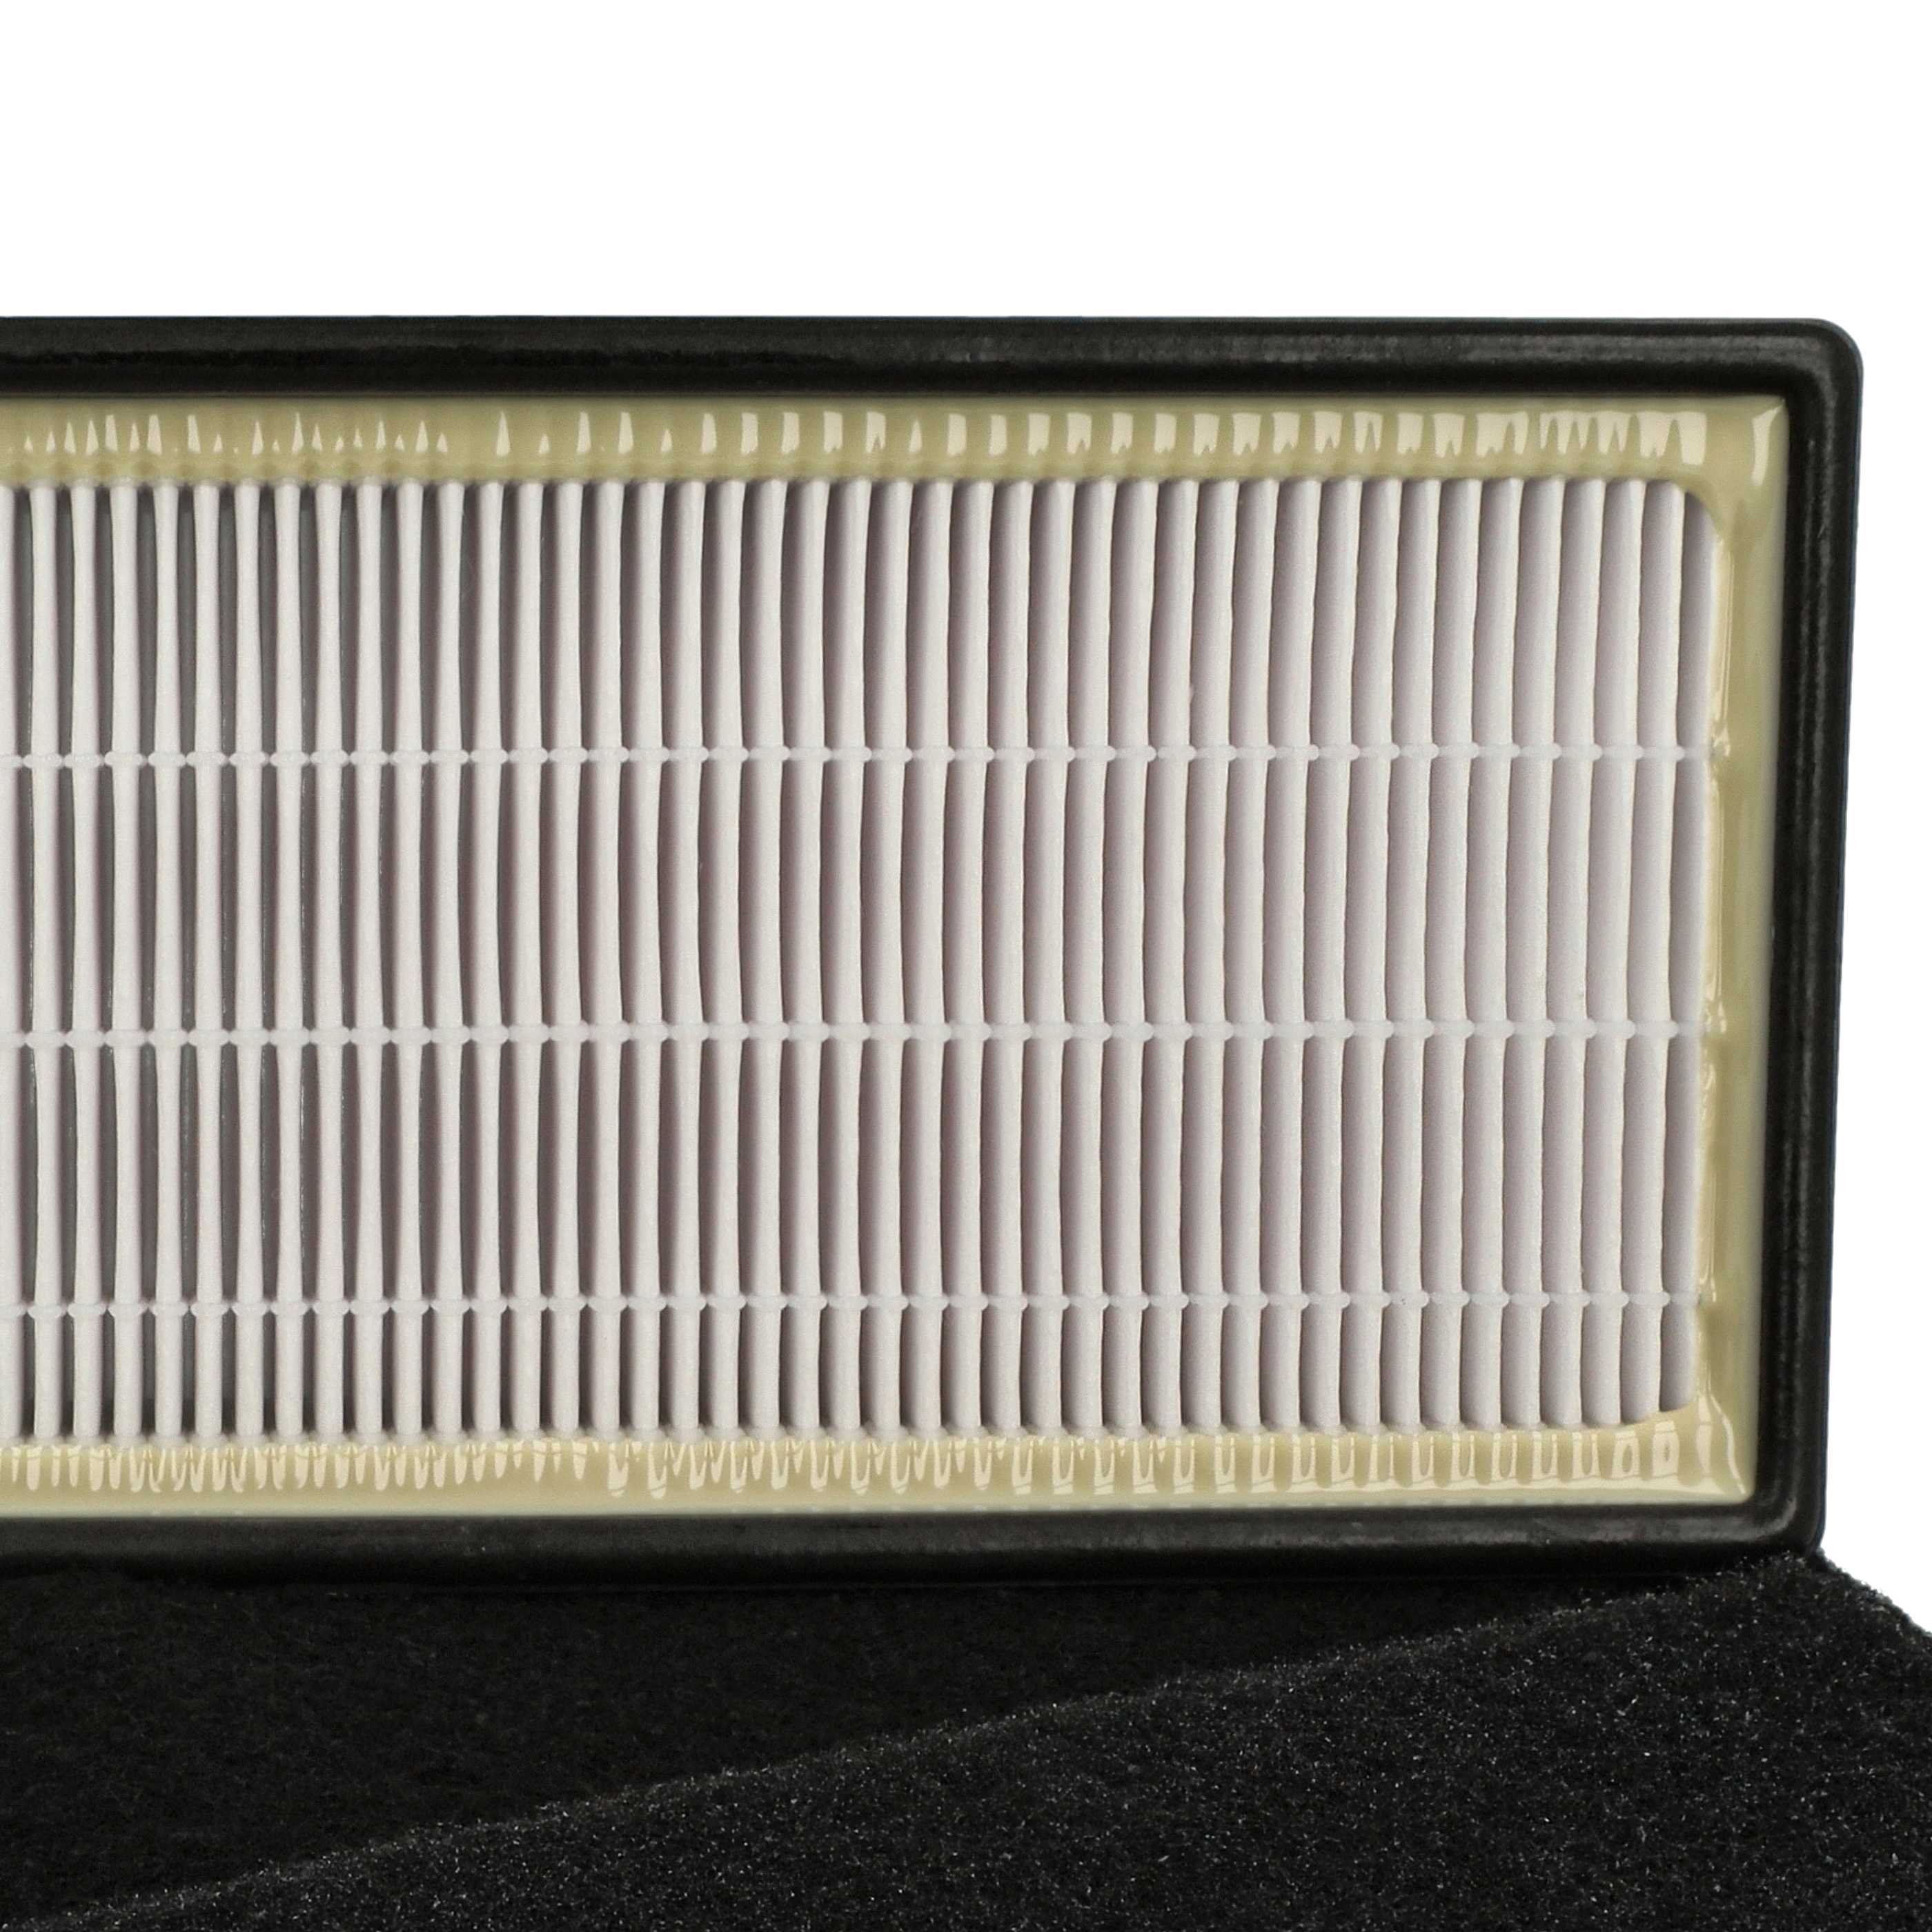 2x Filtry do oczyszczacza powietrza zam. Honeywell RPAP-9071 - filtr wstępny, kombi